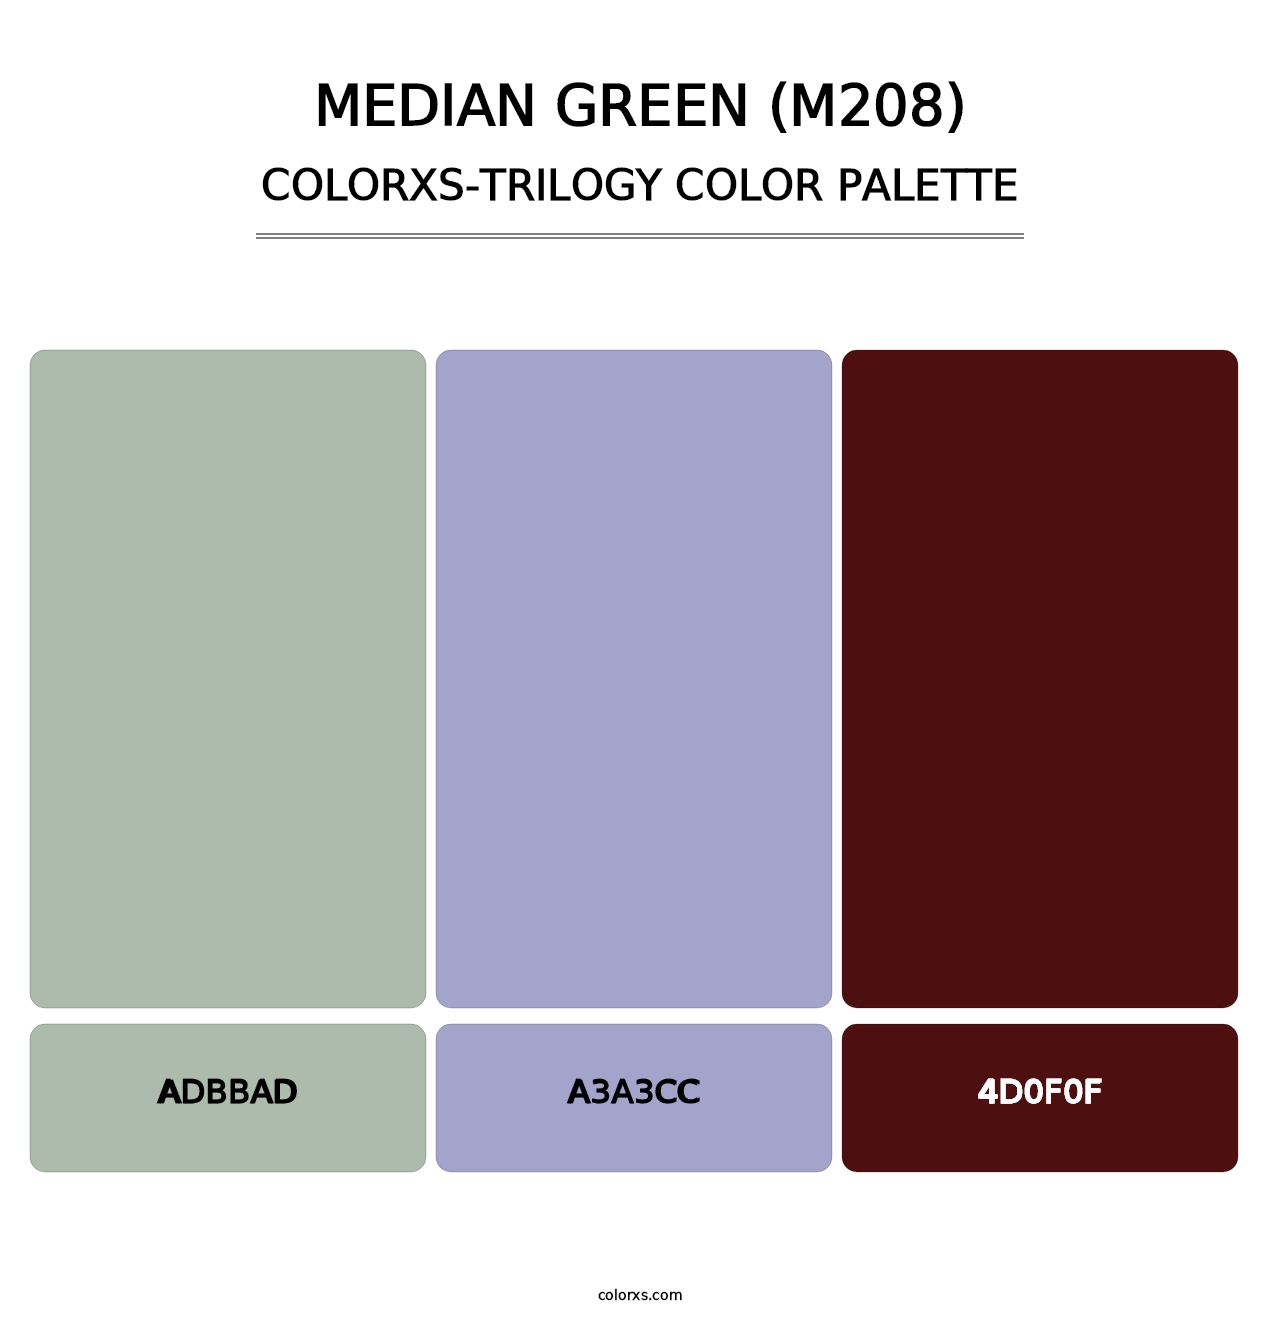 Median Green (M208) - Colorxs Trilogy Palette